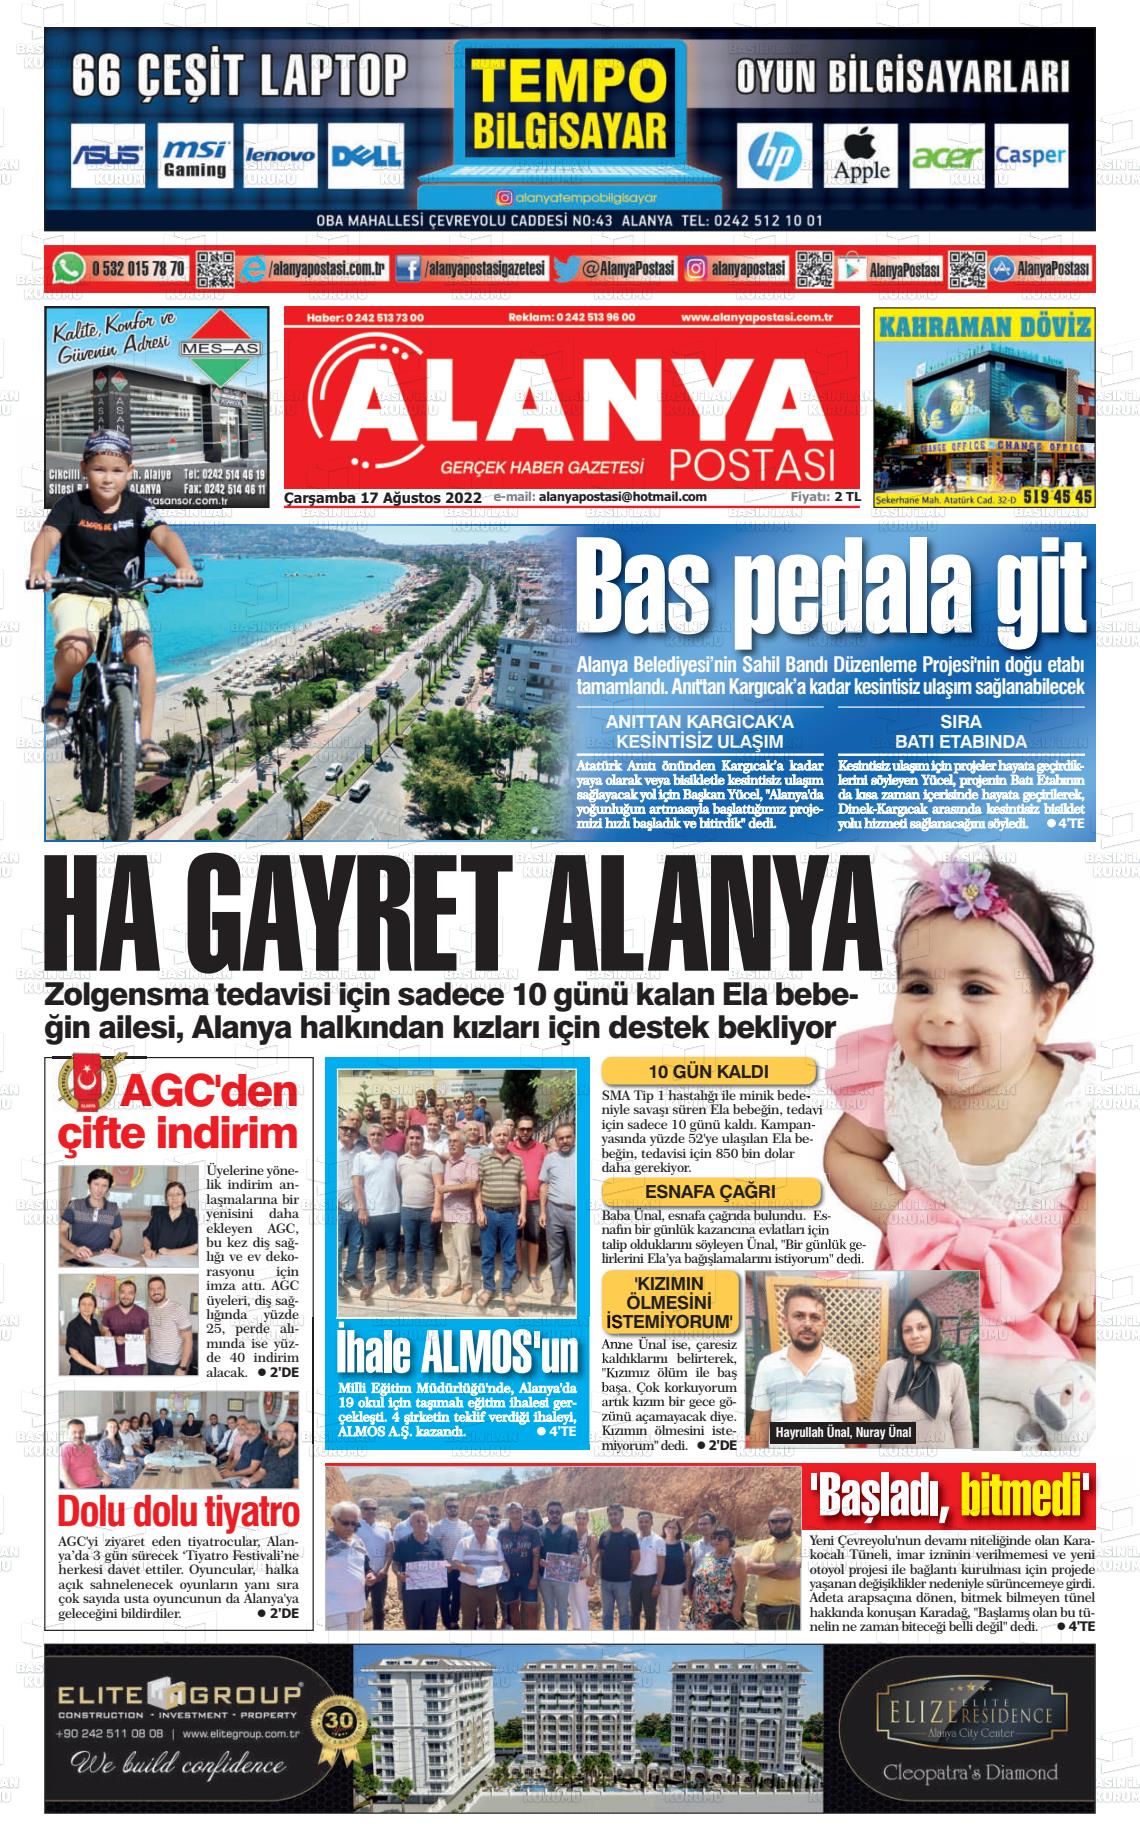 17 Ağustos 2022 Alanya Postası Gazete Manşeti